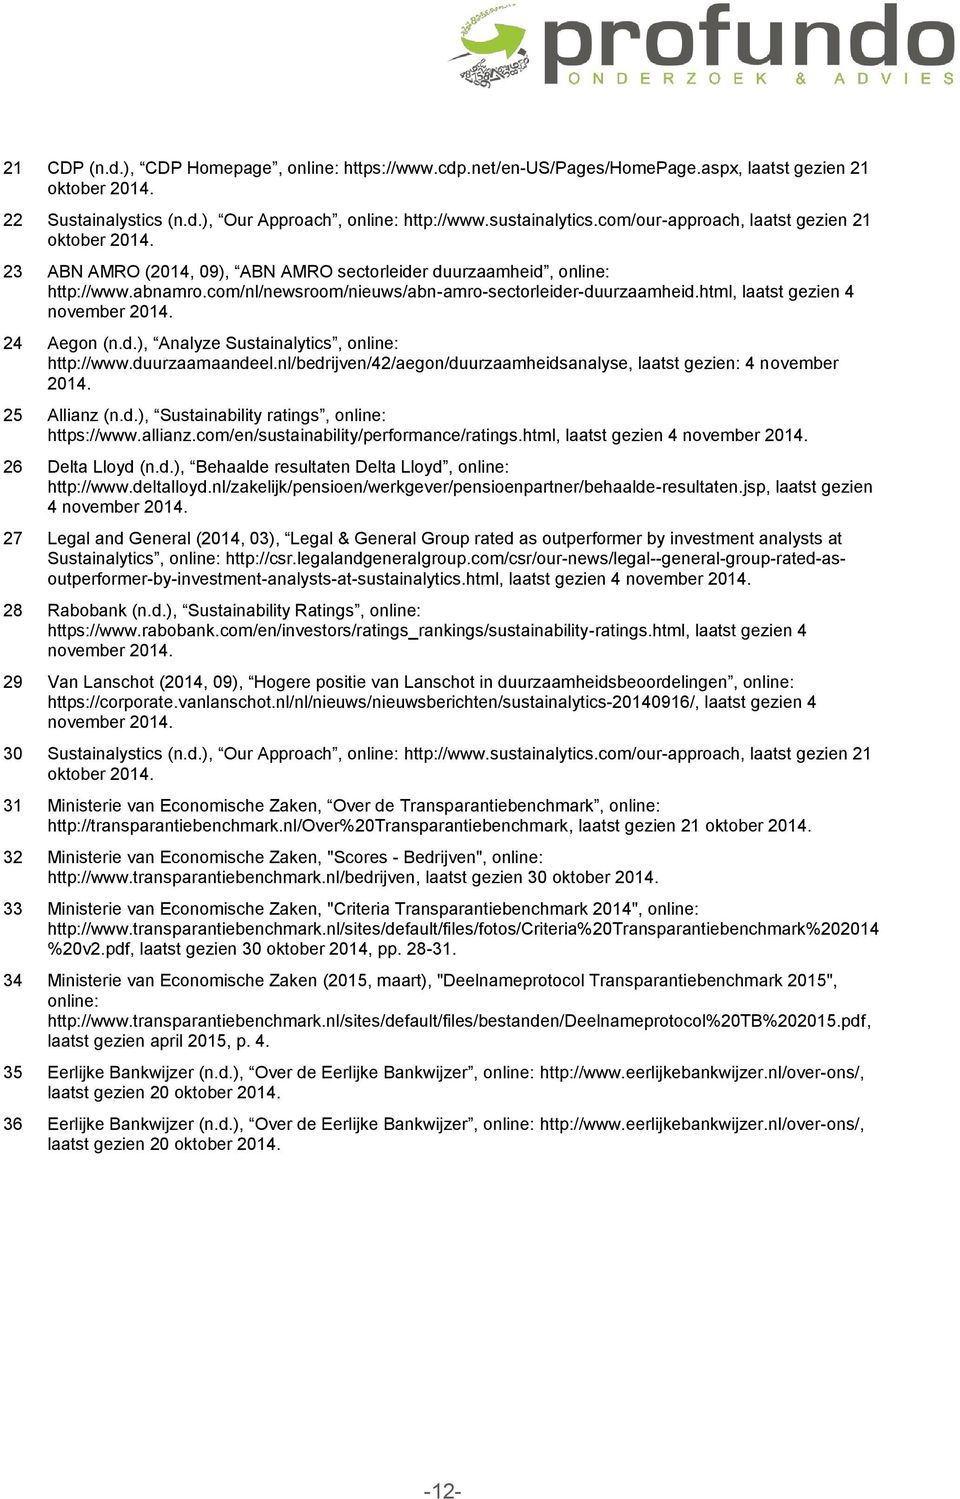 html, laatst gezien 4 november 2014. 24 Aegon (n.d.), Analyze Sustainalytics, online: http://www.duurzaamaandeel.nl/bedrijven/42/aegon/duurzaamheidsanalyse, laatst gezien: 4 november 2014.